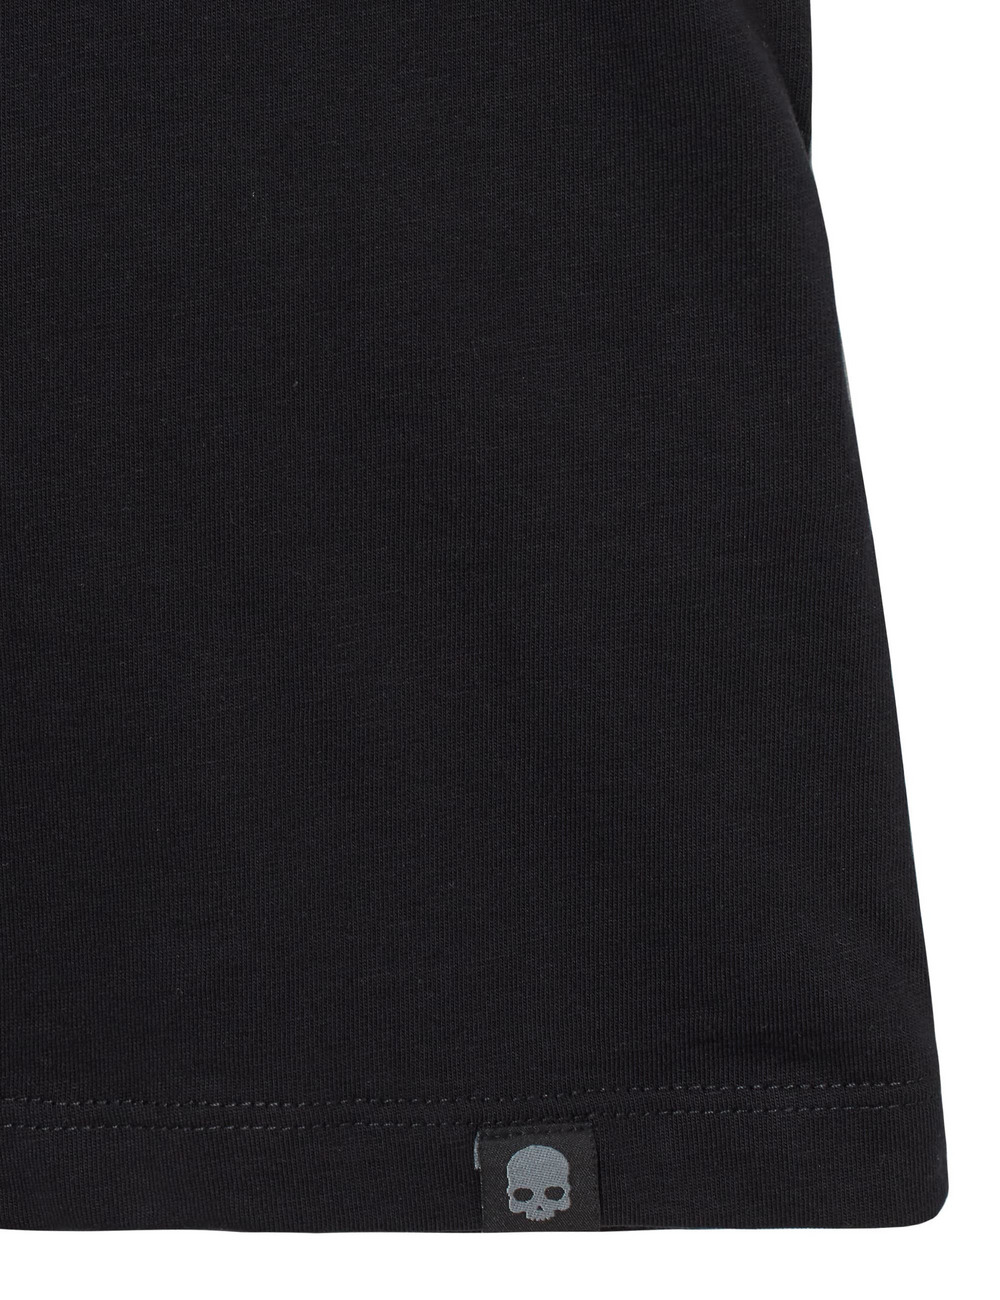 プリント刺繍スカルTシャツ(半袖) / ENBROIDERED SKULL TEE  詳細画像 ブラック 6